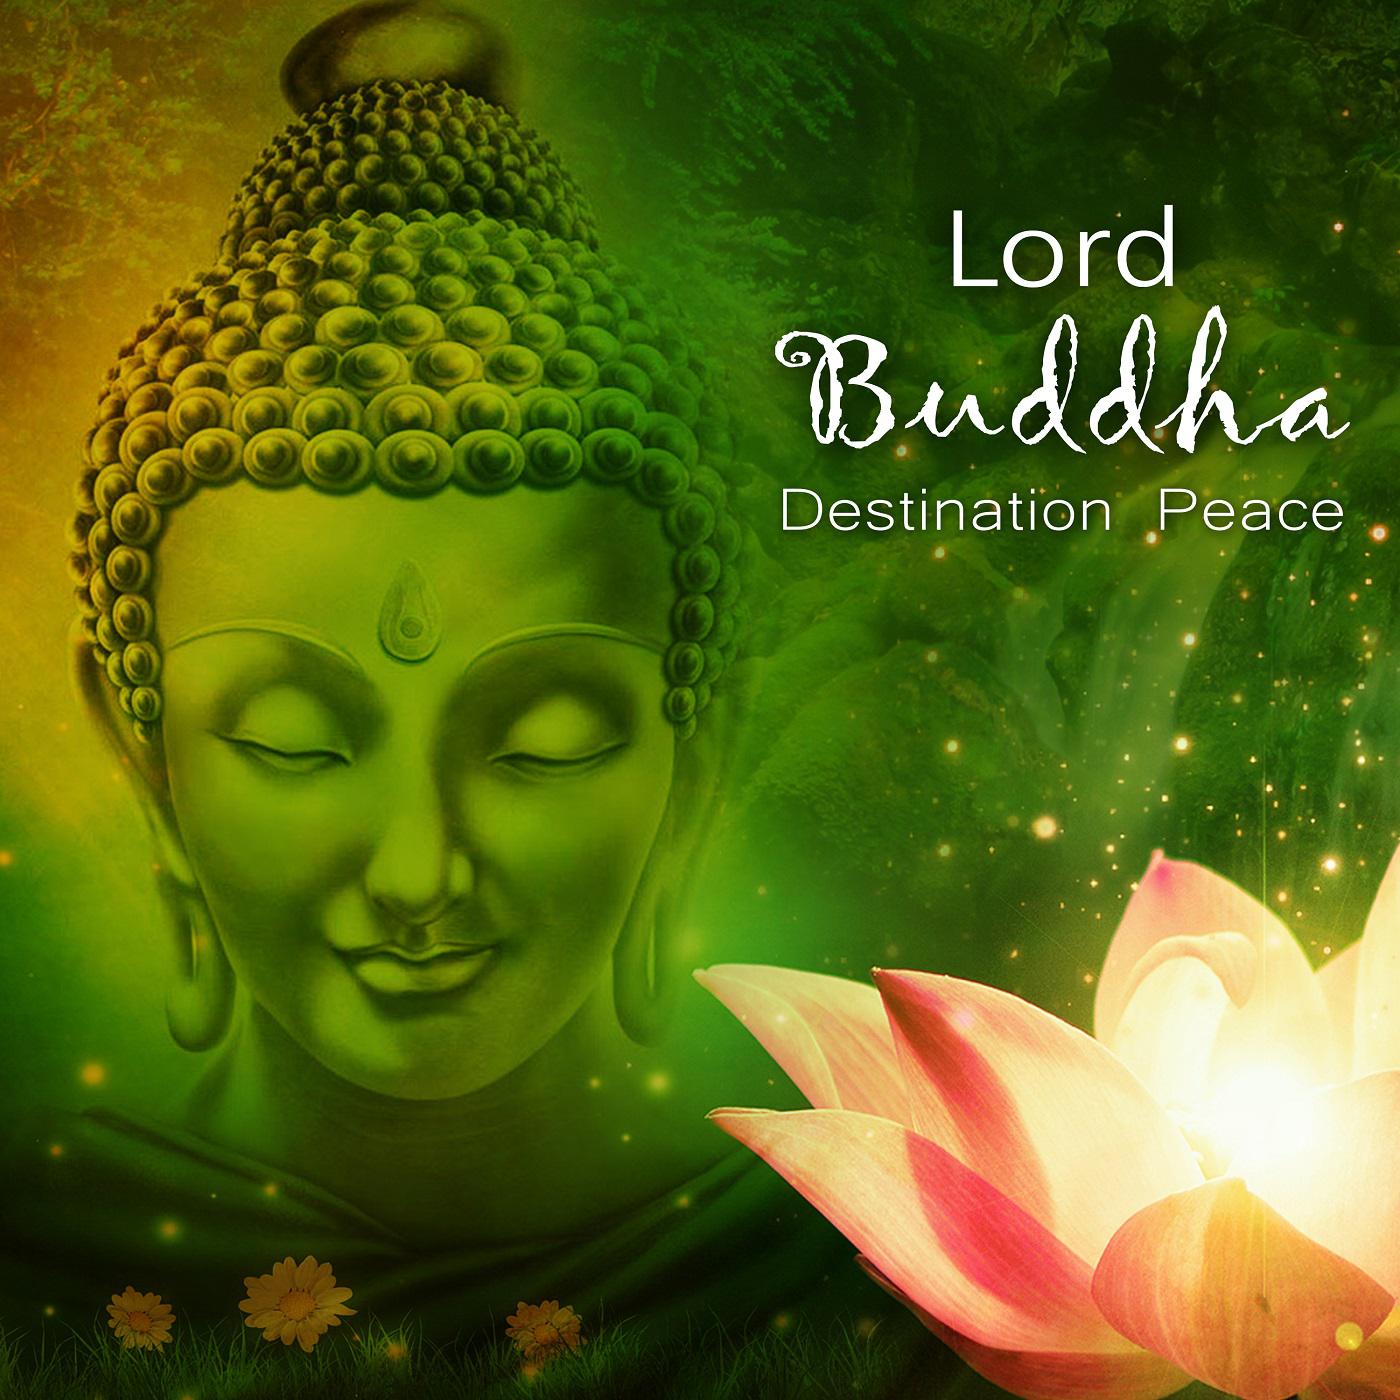 Buddha's Dream